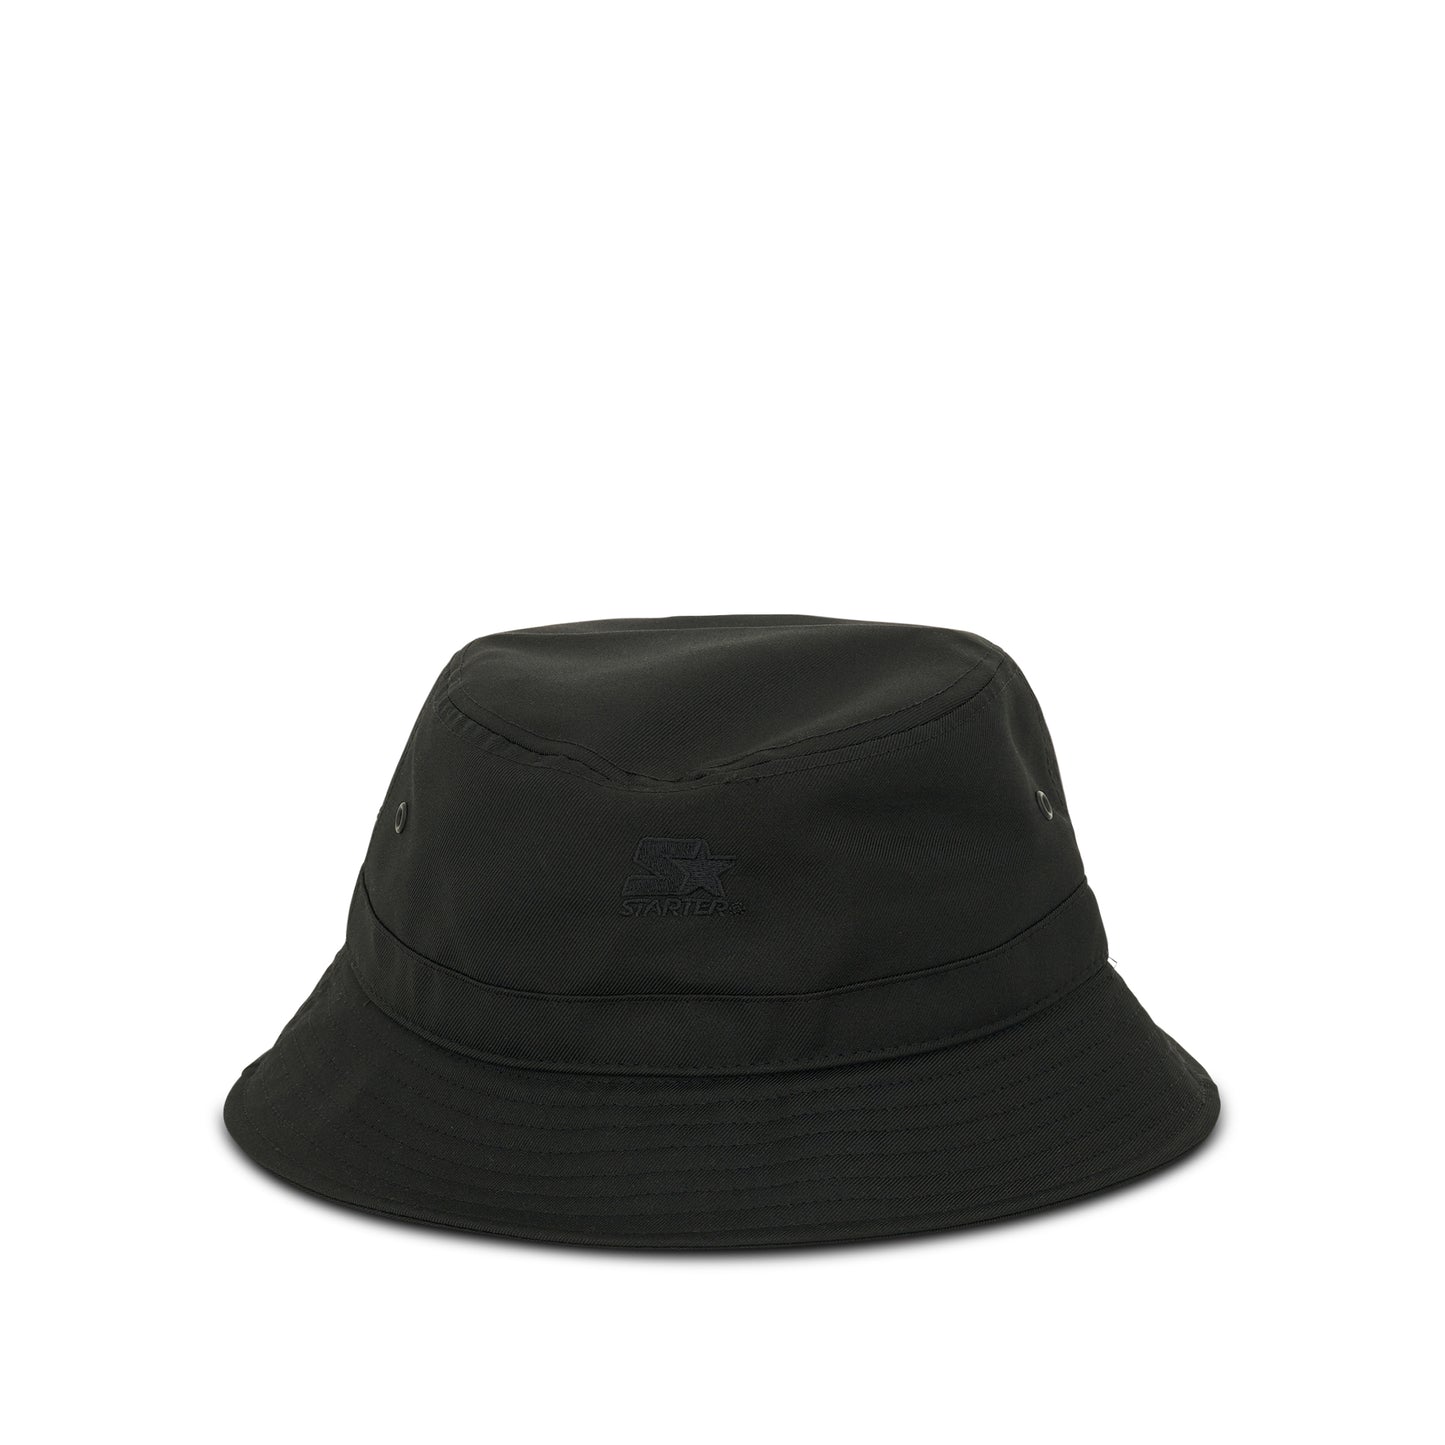 Colourful Cross Bucket Hat in Black